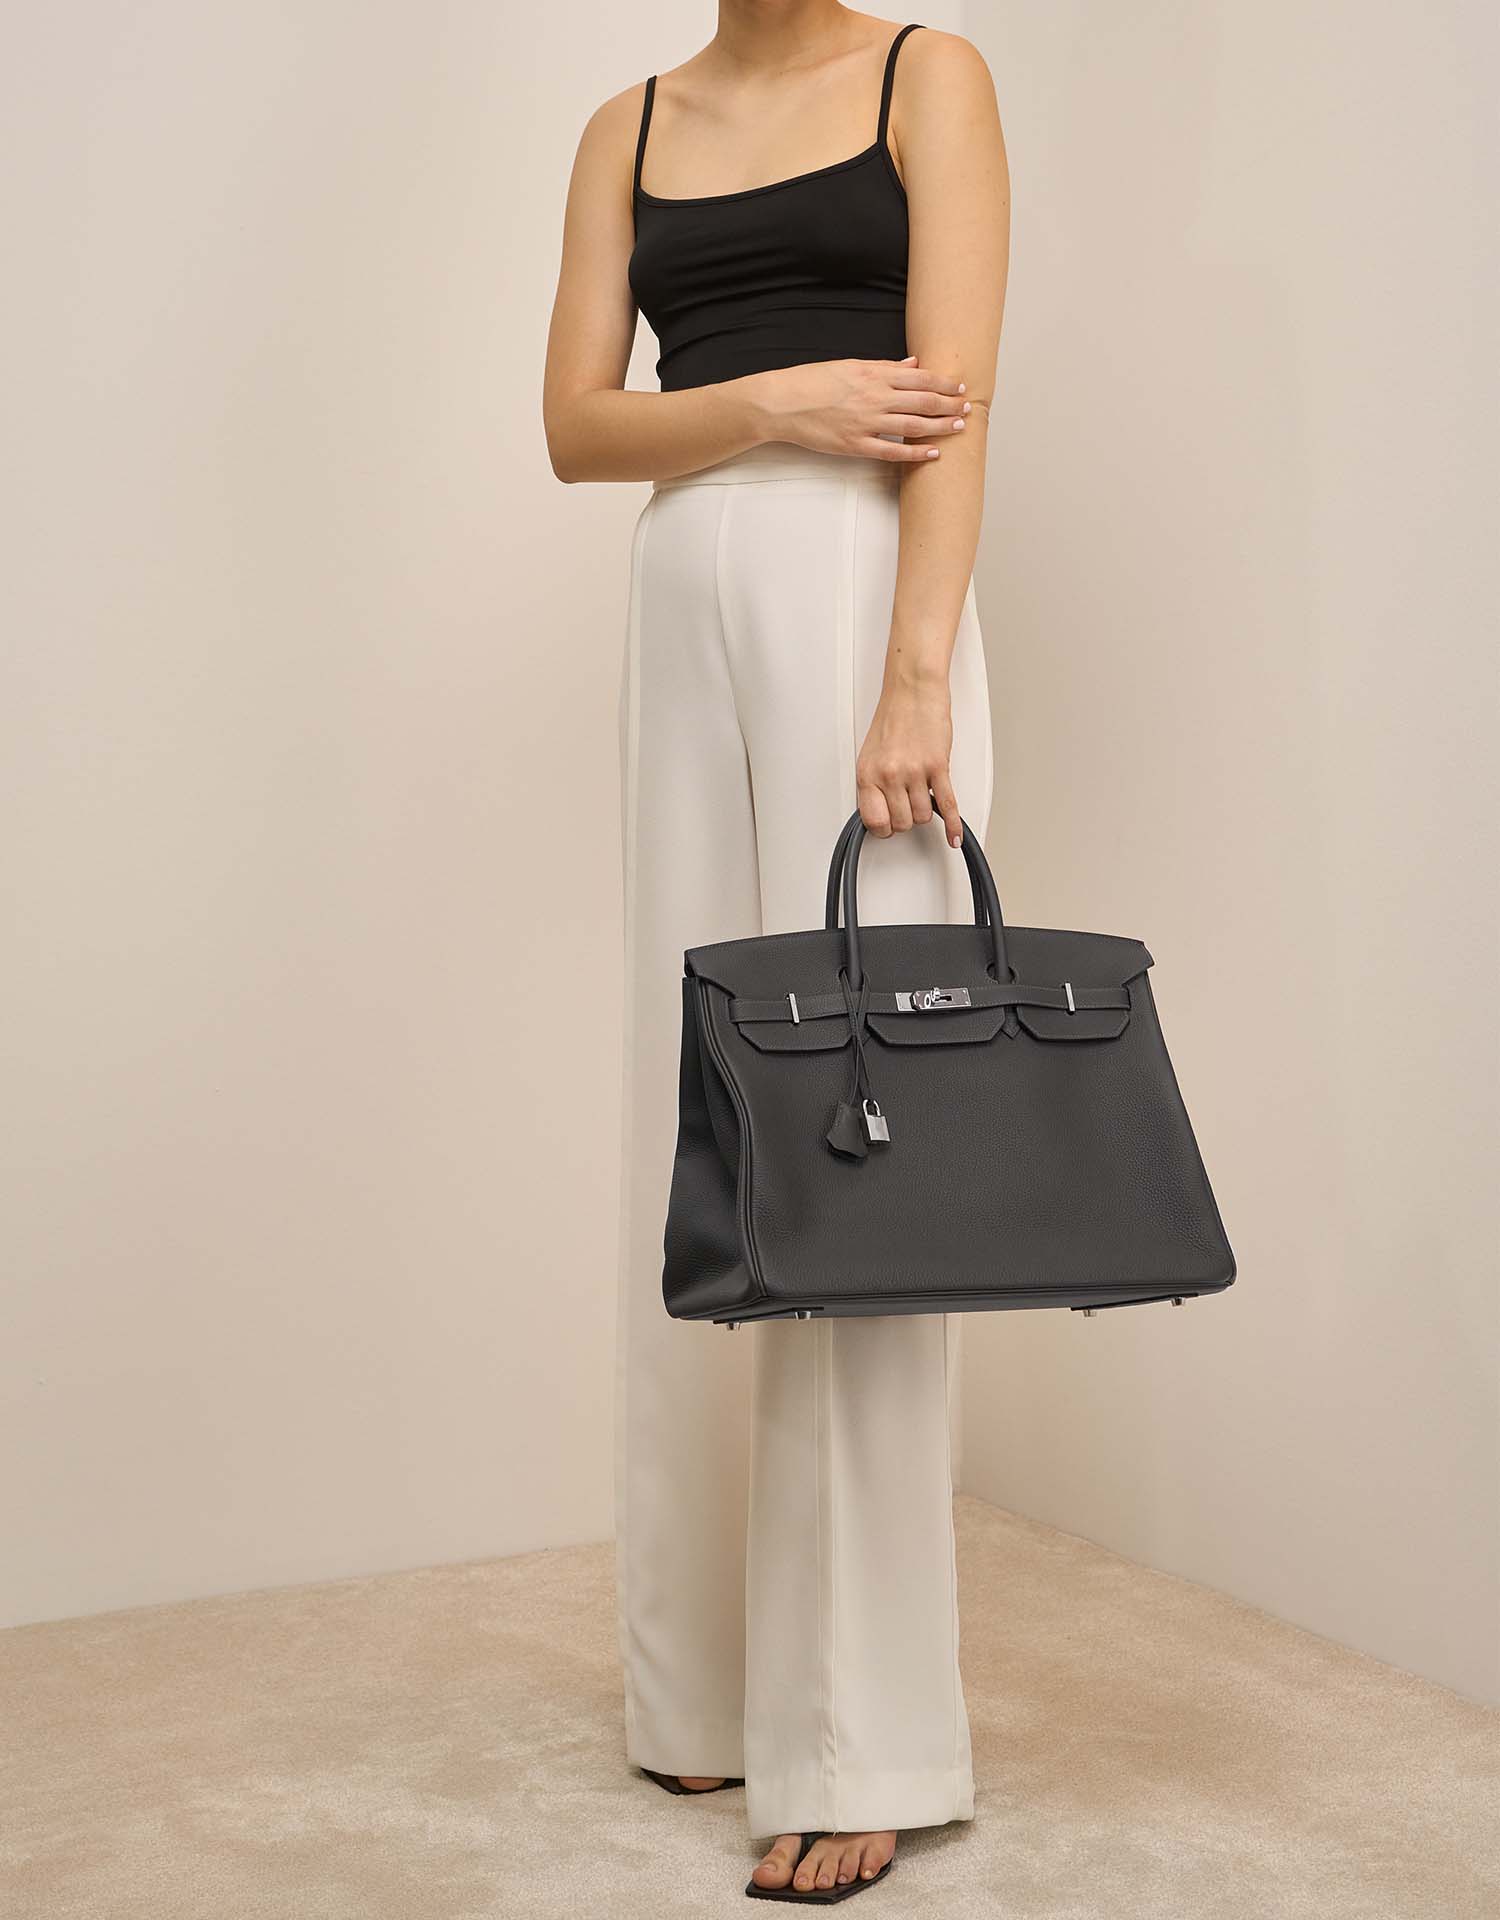 Hermès Birkin 40 GrisMeyer sur Modèle | Vendez votre sac de créateur sur Saclab.com